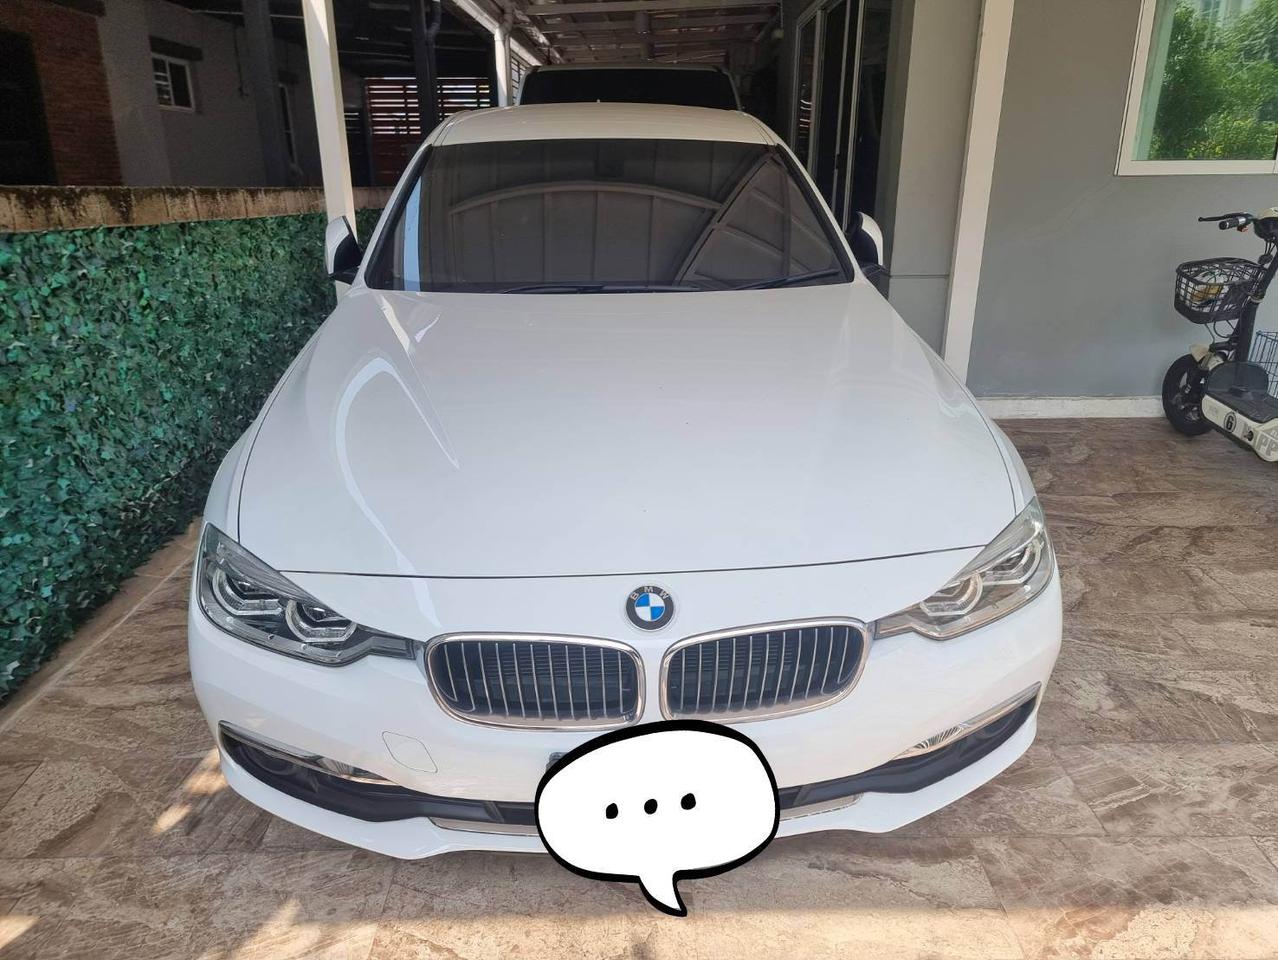 ขาย BMW รถบ้านเจ้าของขับเองขายเอง